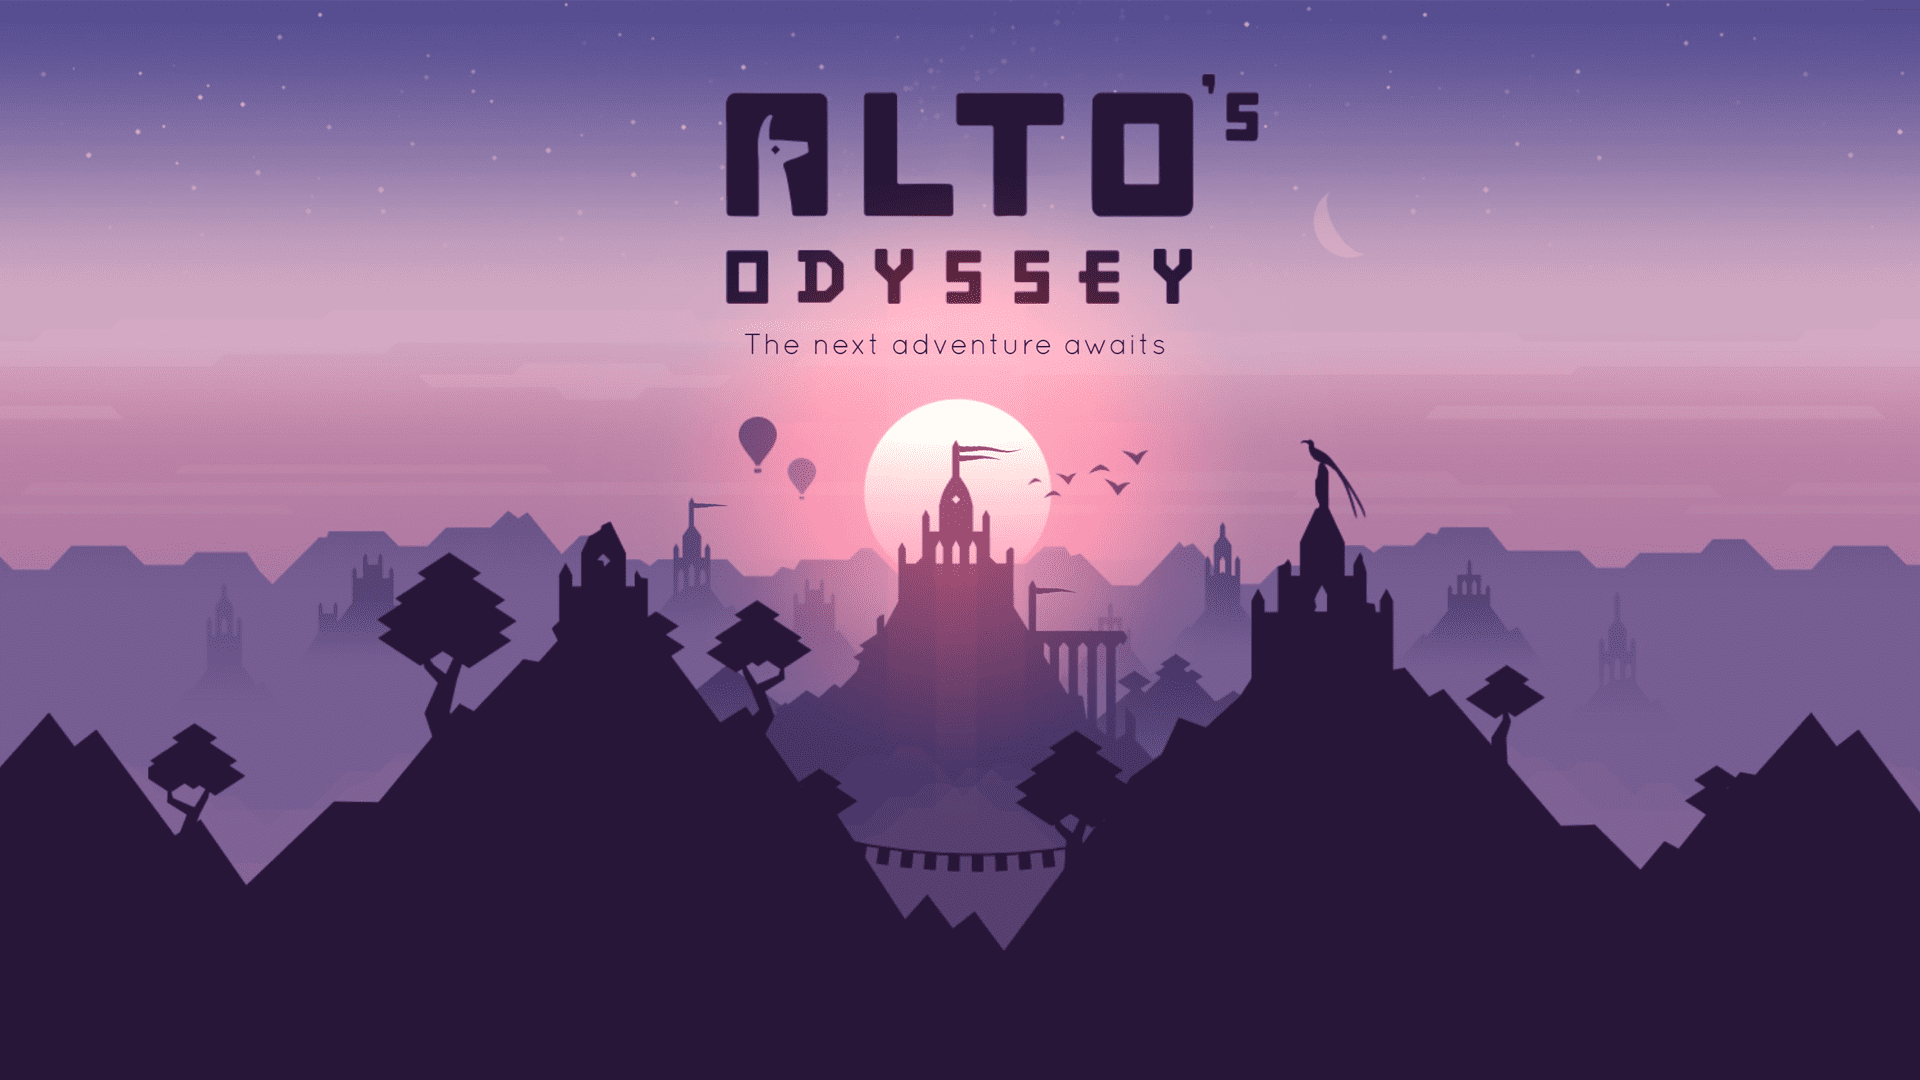 ‘Alto’s Odyssey’ Berselancar Ke Apple Video game, lengkap dengan bioma kota baru